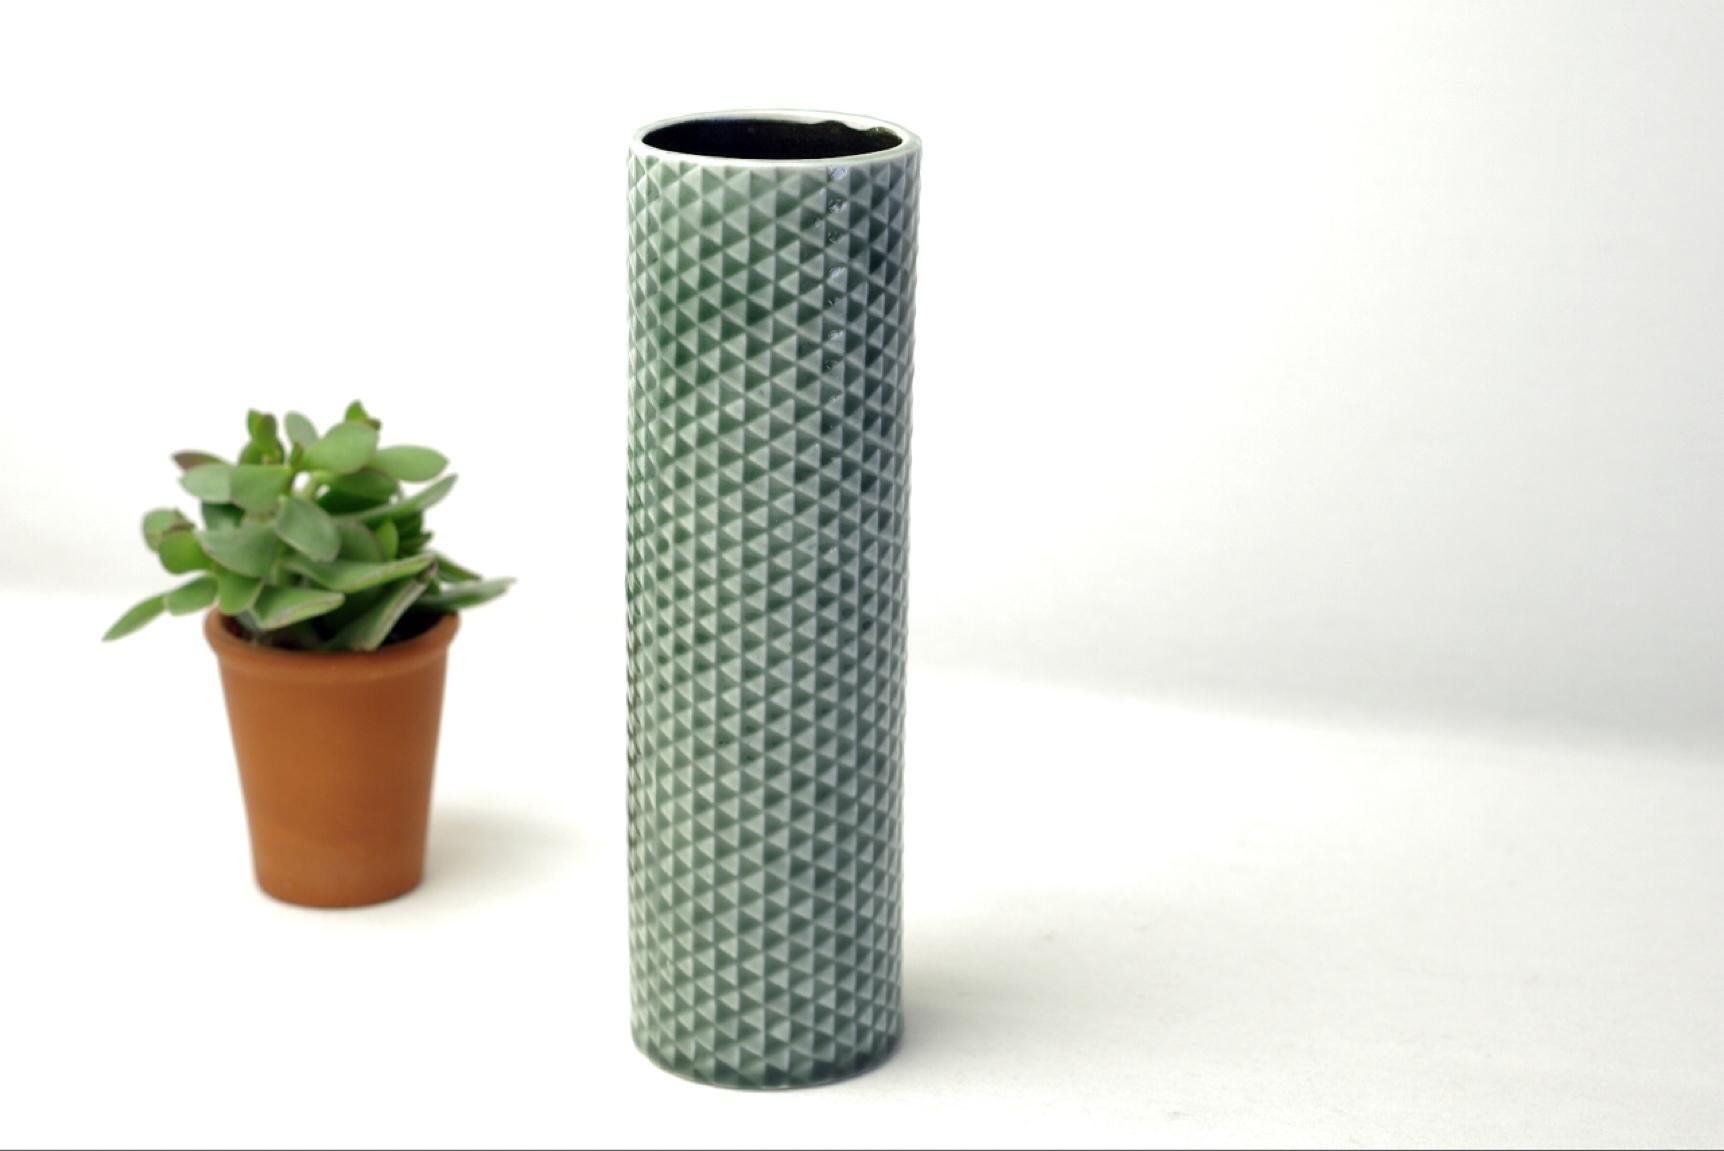 Description du produit :
Stig Gaines, le créateur de ce vase, a acquis une renommée internationale lors de l'exposition de design qui s'est tenue en 1955 à Heldly, où il a présenté la série de faïences ménagères Domino. Les objets de la série des